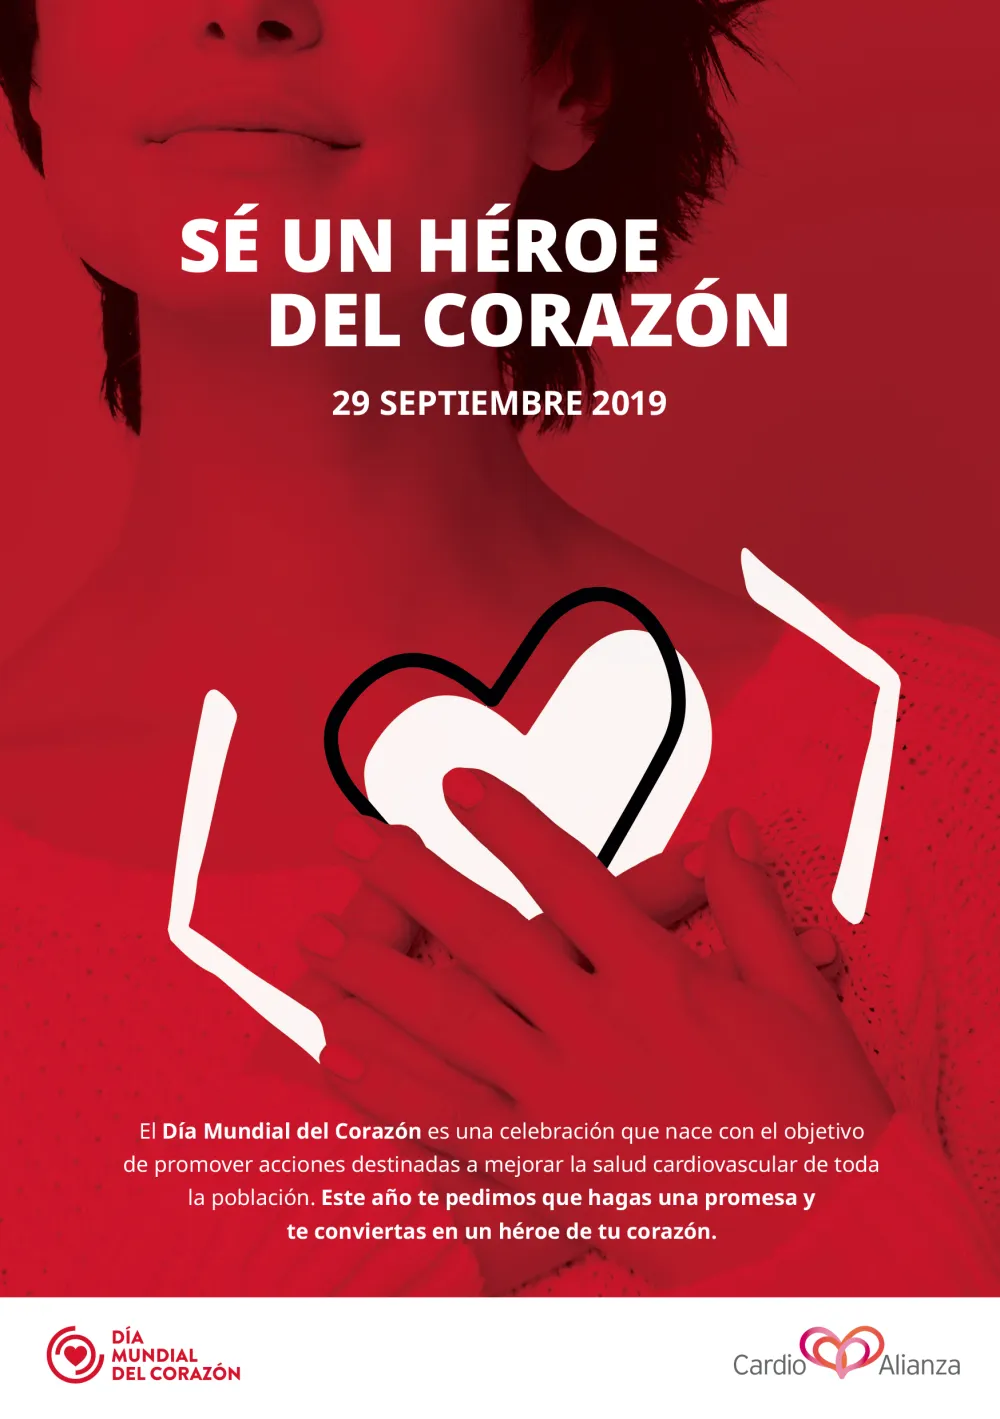 Foto del cartel de la campaña del dia mundial del corazon: sé un héroe el corazón